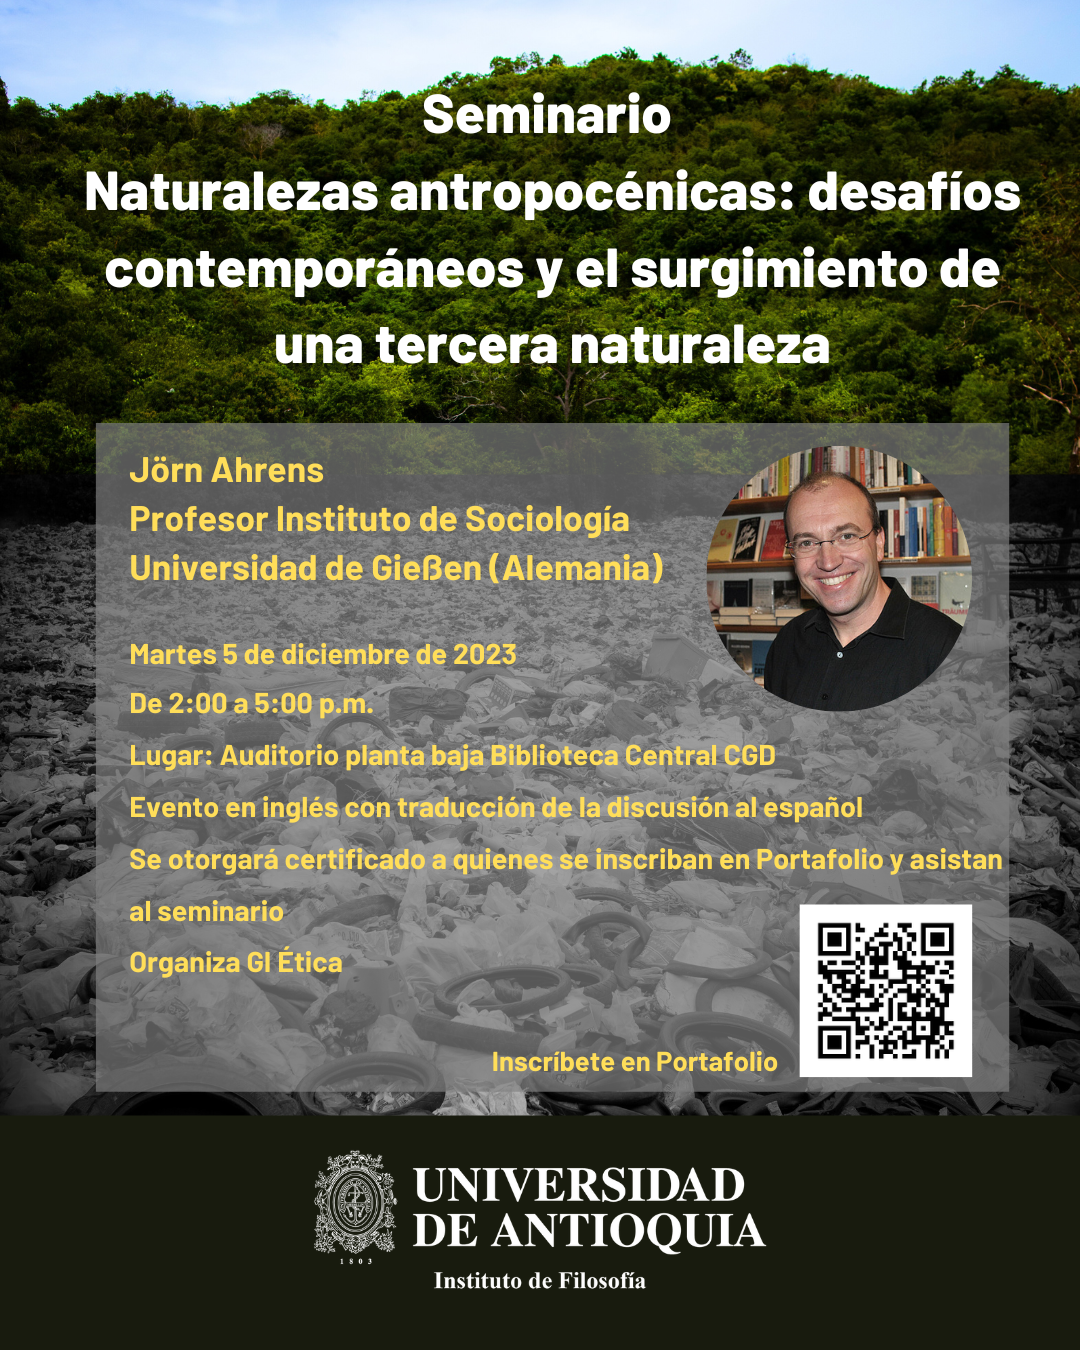 Seminar: Naturalezas antropocénicas: desafíos contemporáneos y el surgimiento de una tercera naturaleza – Jörn Ahrens, Universidad de Antioquia, Colombia